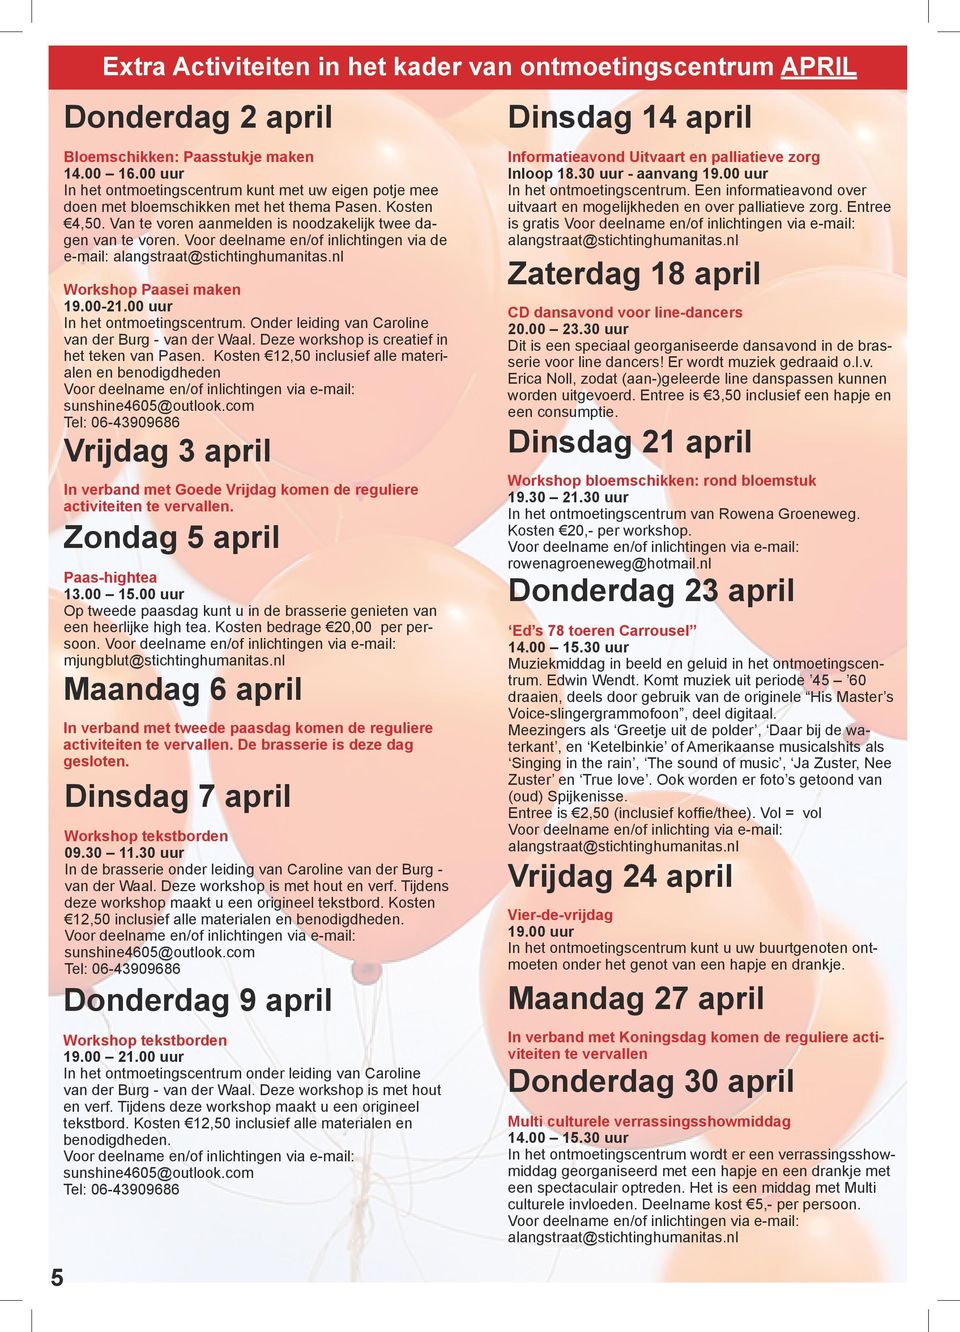 Voor deelname en/of inlichtingen via de e-mail: Workshop Paasei maken 19.00-21.00 uur In het ontmoetingscentrum. Onder leiding van Caroline van der Burg - van der Waal.